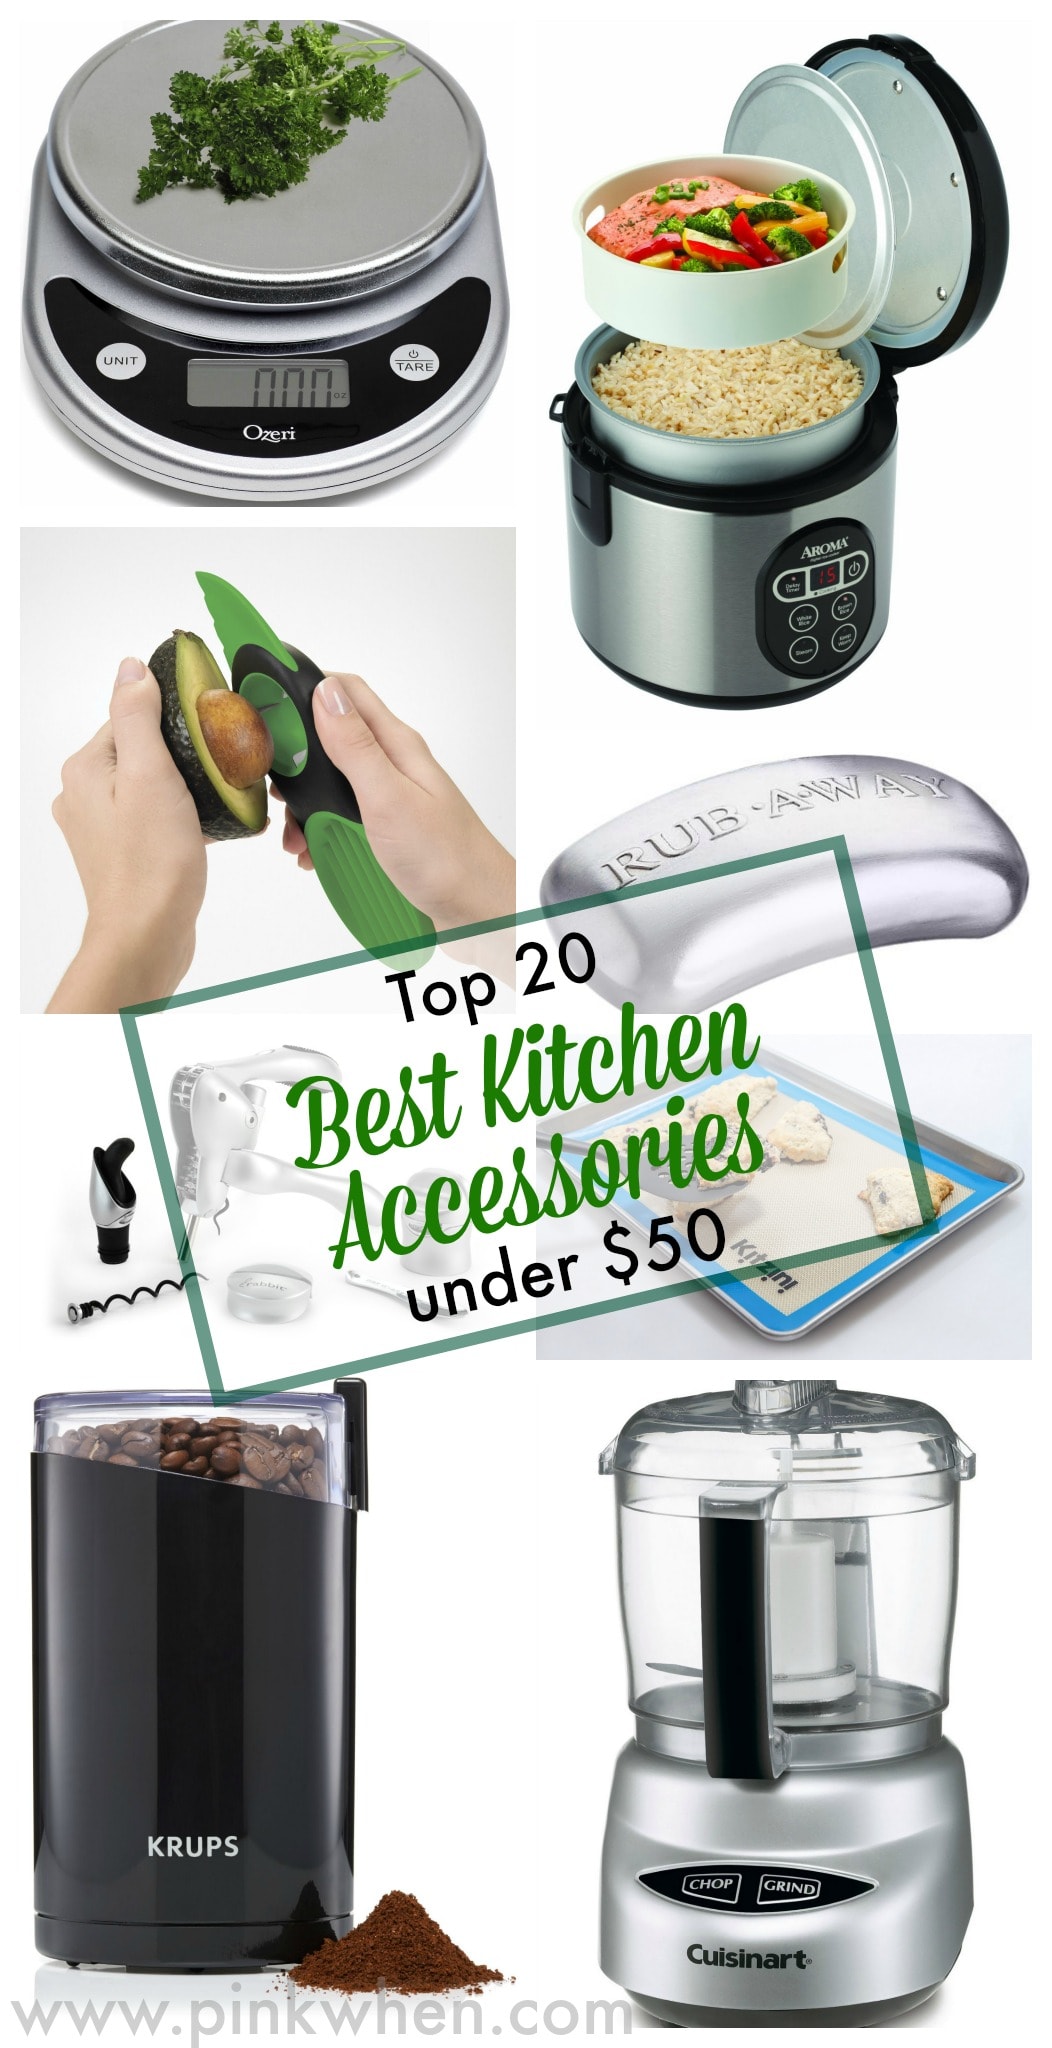 Top 20 Best Kitchen Accessories Under  via PinkWhen.com